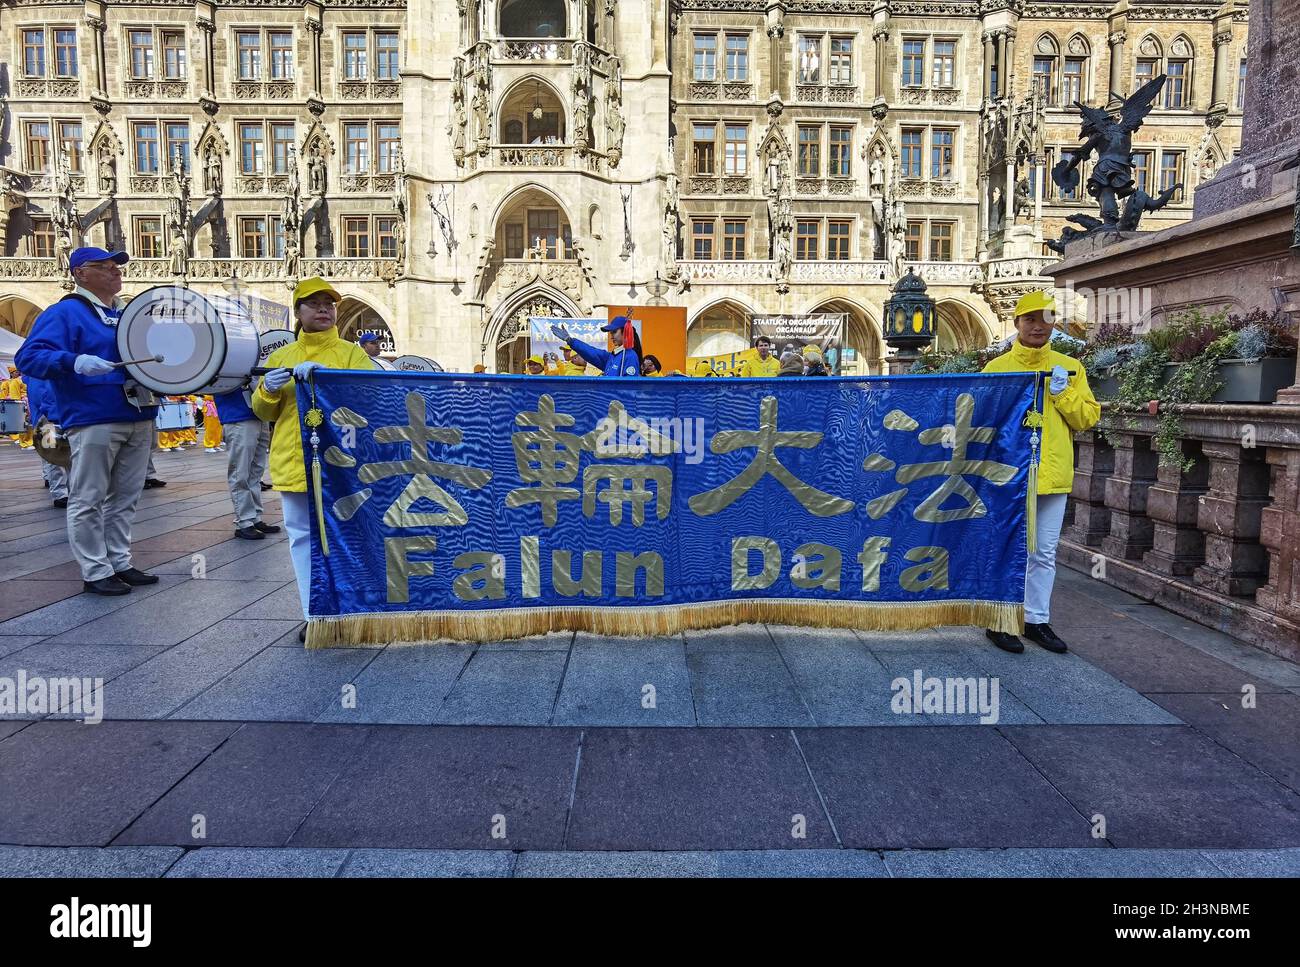 München, Bayern, Deutschland. Okt. 2021. In einer Präsentation der internationalen Politik in Deutschland organisierte die Falun Dafa/Falun Gong 'Meditationsgruppe' in München eine große Demonstration gegen die Kommunistische Partei Chinas. Die Falun Gong- und Dafa-Gruppen werden auf der ganzen Welt, insbesondere in den Vereinigten Staaten, als "Kulte" mit der New Tang Dynasty Mediengruppe als eine Erweiterung von ihnen gesehen, die sich, während sie gegen die KPCh sind, mit antidemokratischen, Verschwörungen, weit- und rechtsextremen Bewegungen im Westen ausrichtet. Kredit: ZUMA Press, Inc./Alamy Live Nachrichten Stockfoto